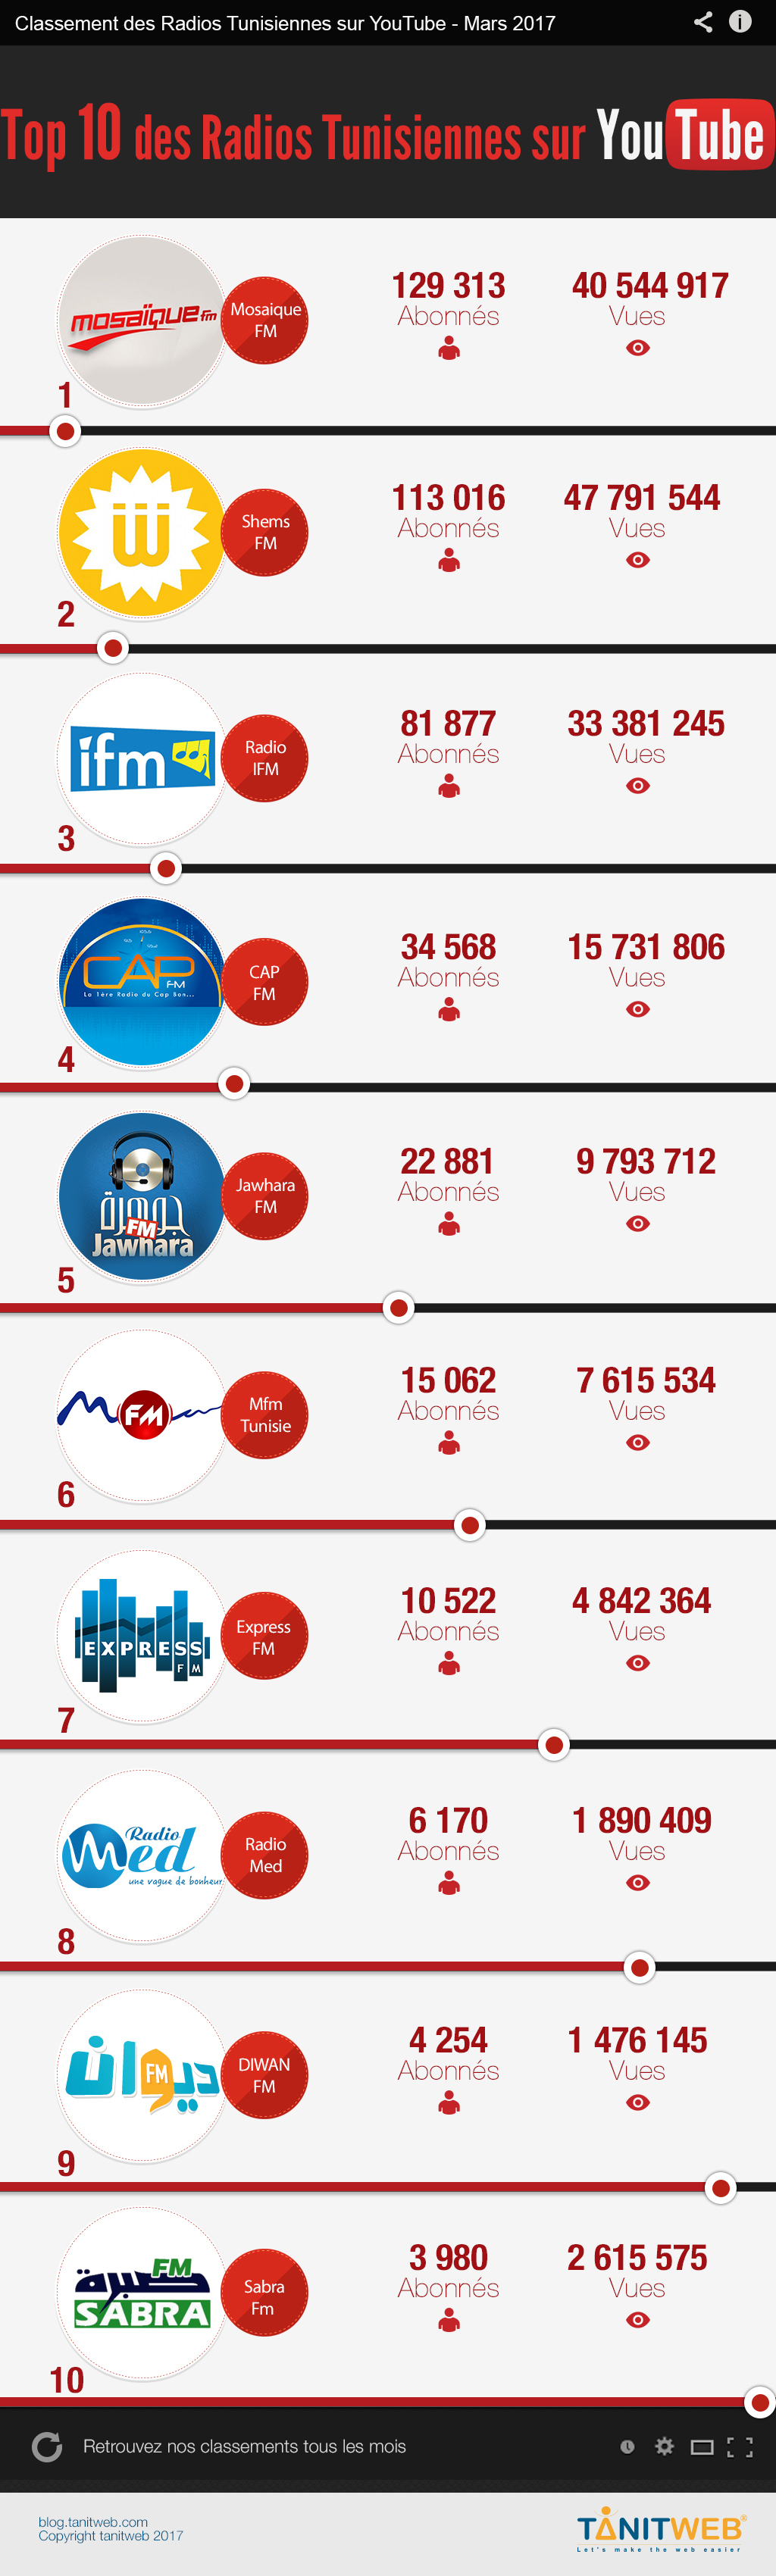 TOP des chaînes YouTube des radios Tunisiennes pour Mars 2017